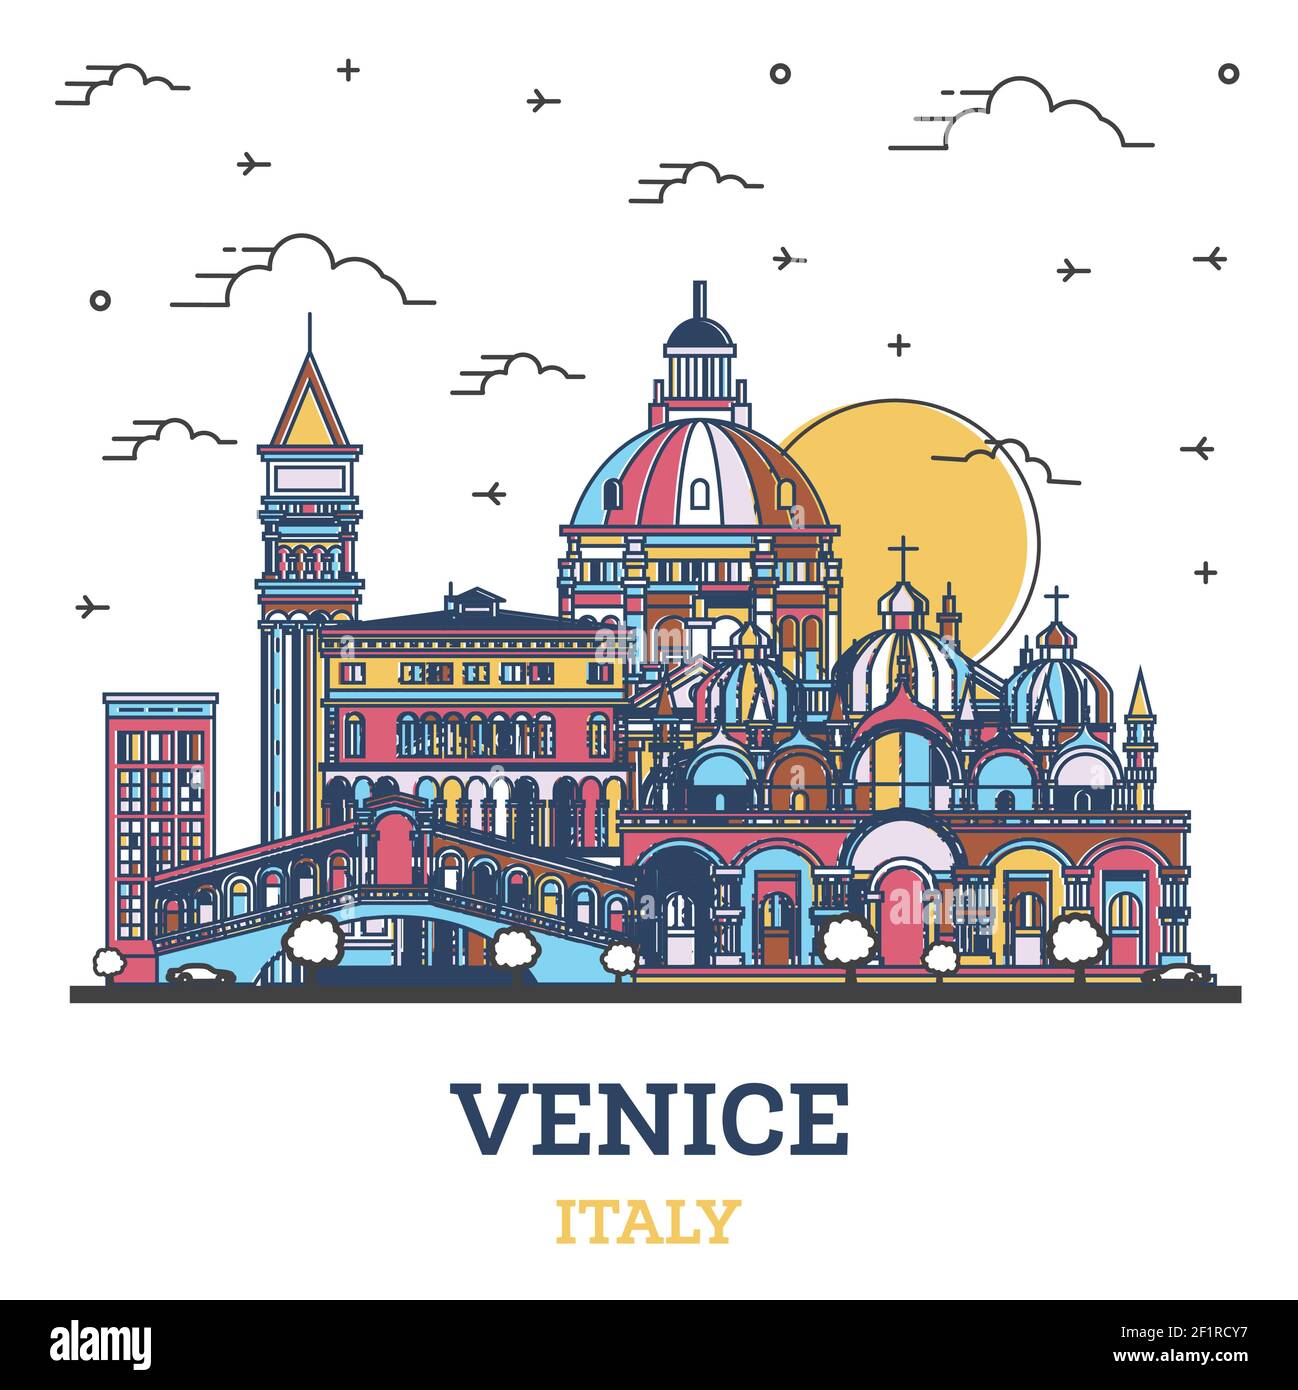 Skizzieren Sie Venedig Italien City Skyline mit farbigen historischen Gebäuden isoliert auf Weiß. Vektorgrafik. Stadtbild von Venedig mit Wahrzeichen. Stock Vektor